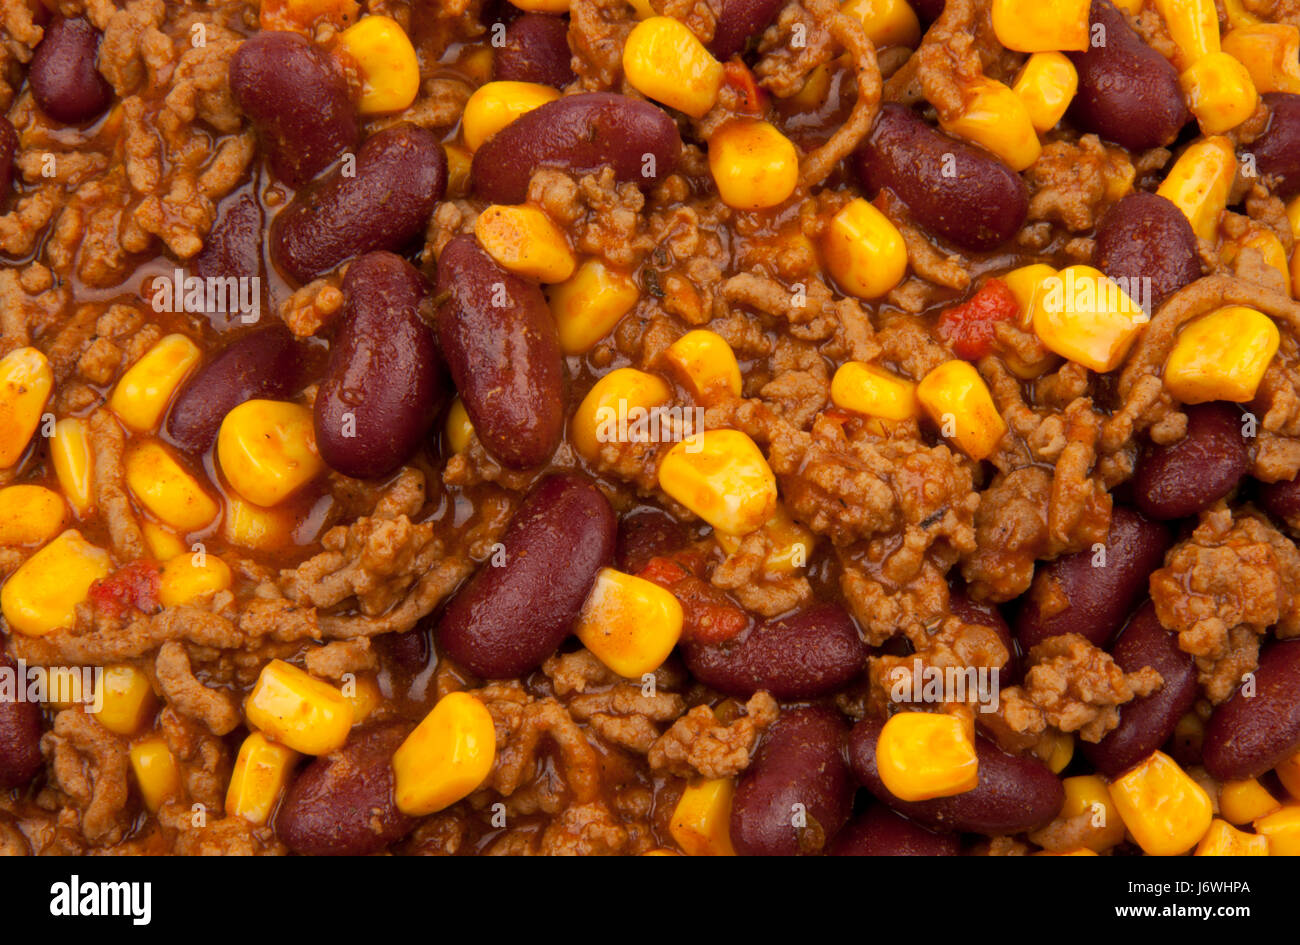 Bohnen Mais Bohnen Chili Chili Fleisch Hackfleisch gehackt-Food-Gericht Mahlzeit gekocht rot Stockfoto